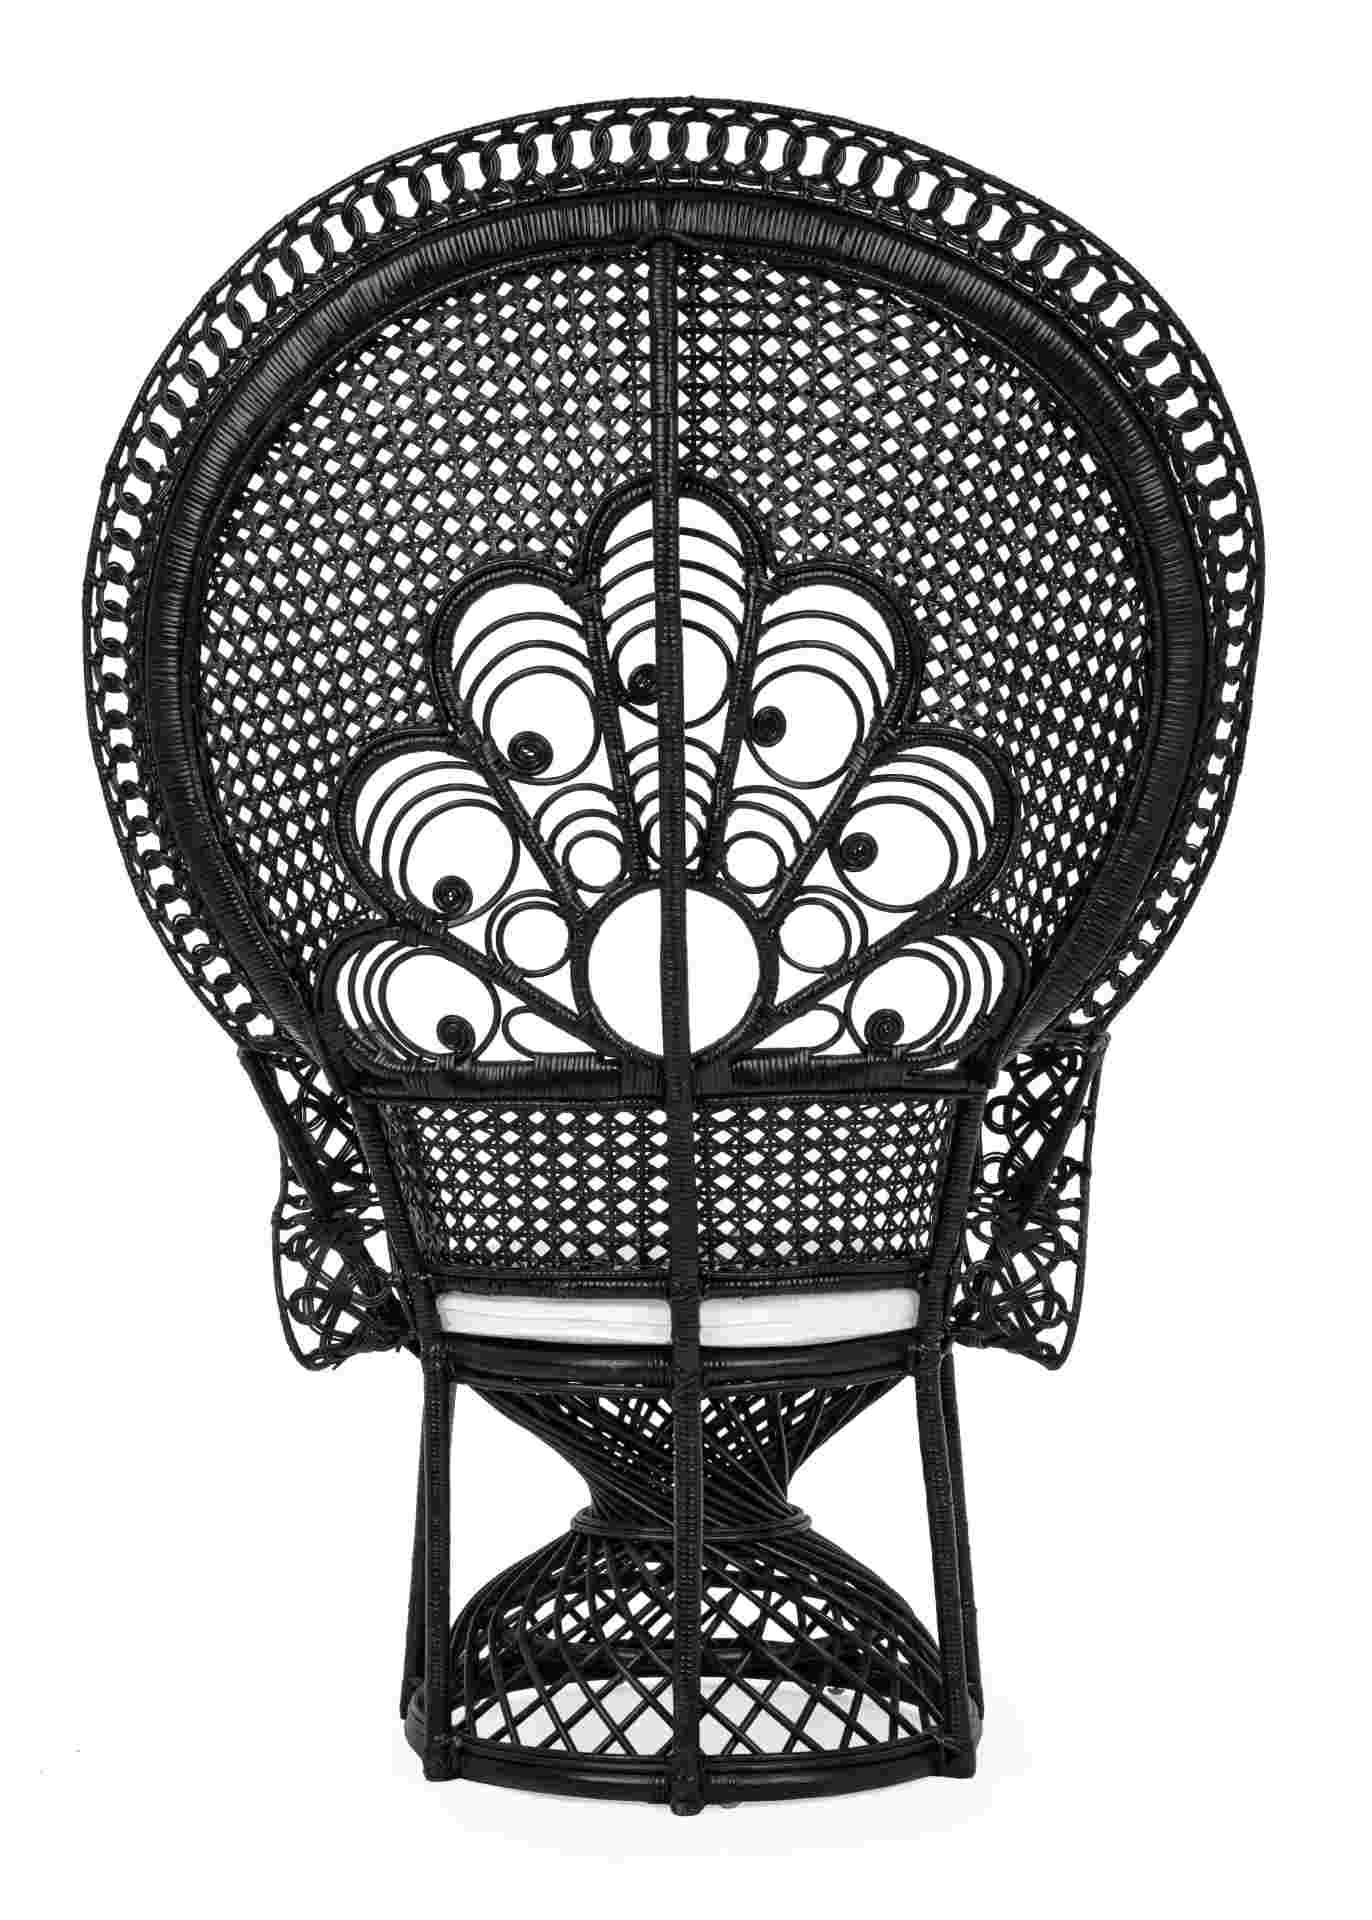 Der Sessel Peacock überzeugt mit seinem klassischen Design. Gefertigt wurde er aus Rattan, welches einen schwarzen Farbton besitzt. Das Gestell ist auch aus Rattan. Der Sessel besitzt eine Sitzhöhe von 47 cm. Die Breite beträgt 106 cm.